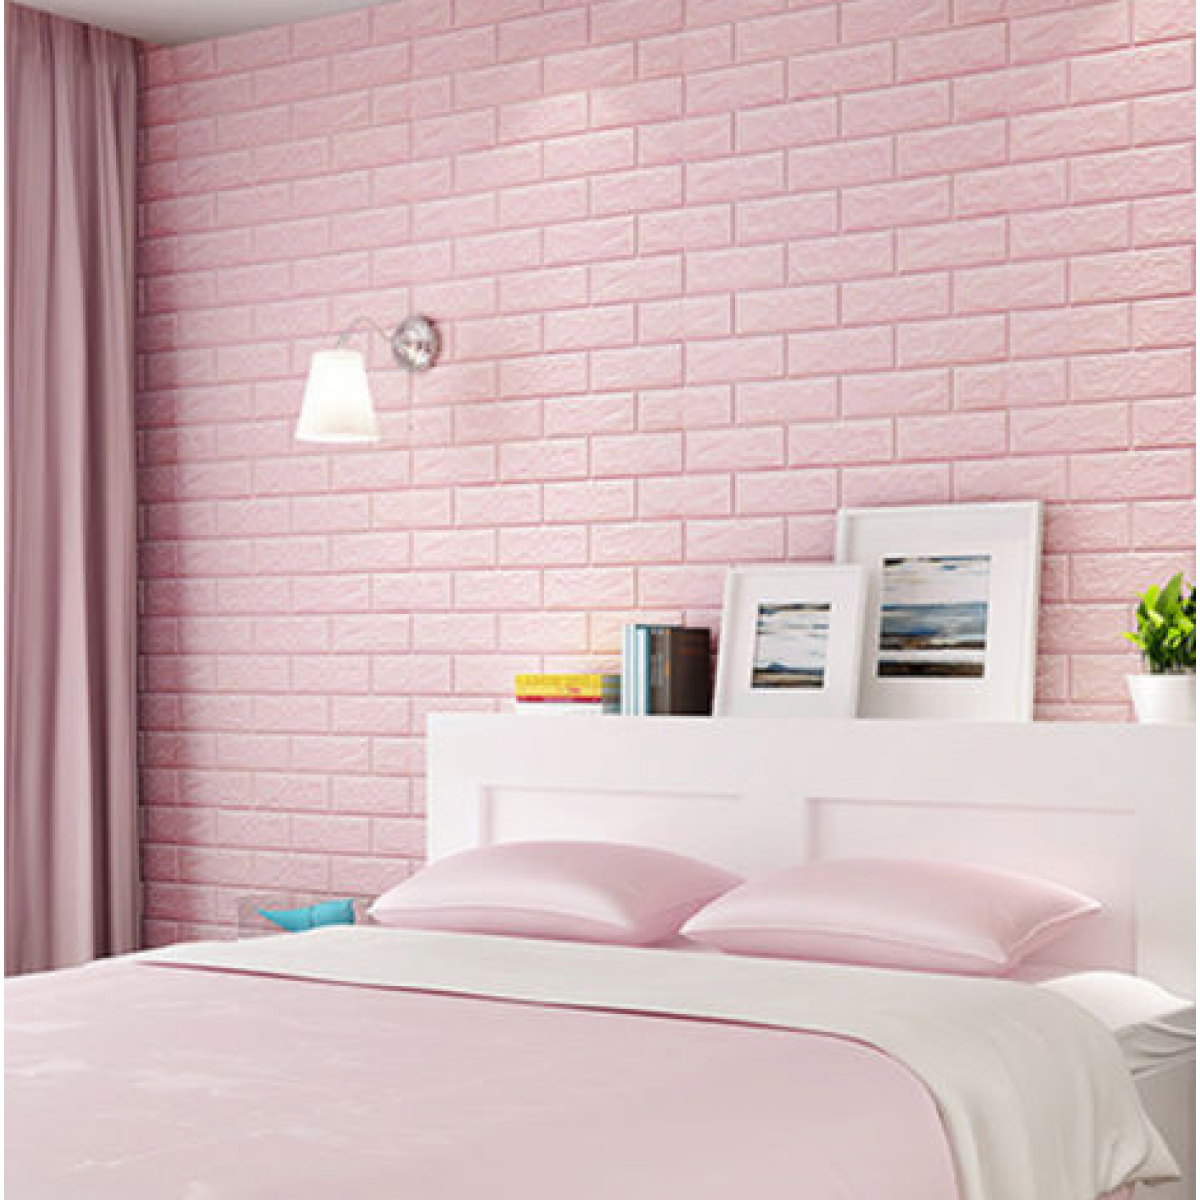 papel tapiz de ladrillo de espuma,dormitorio,pared,rosado,habitación,mueble